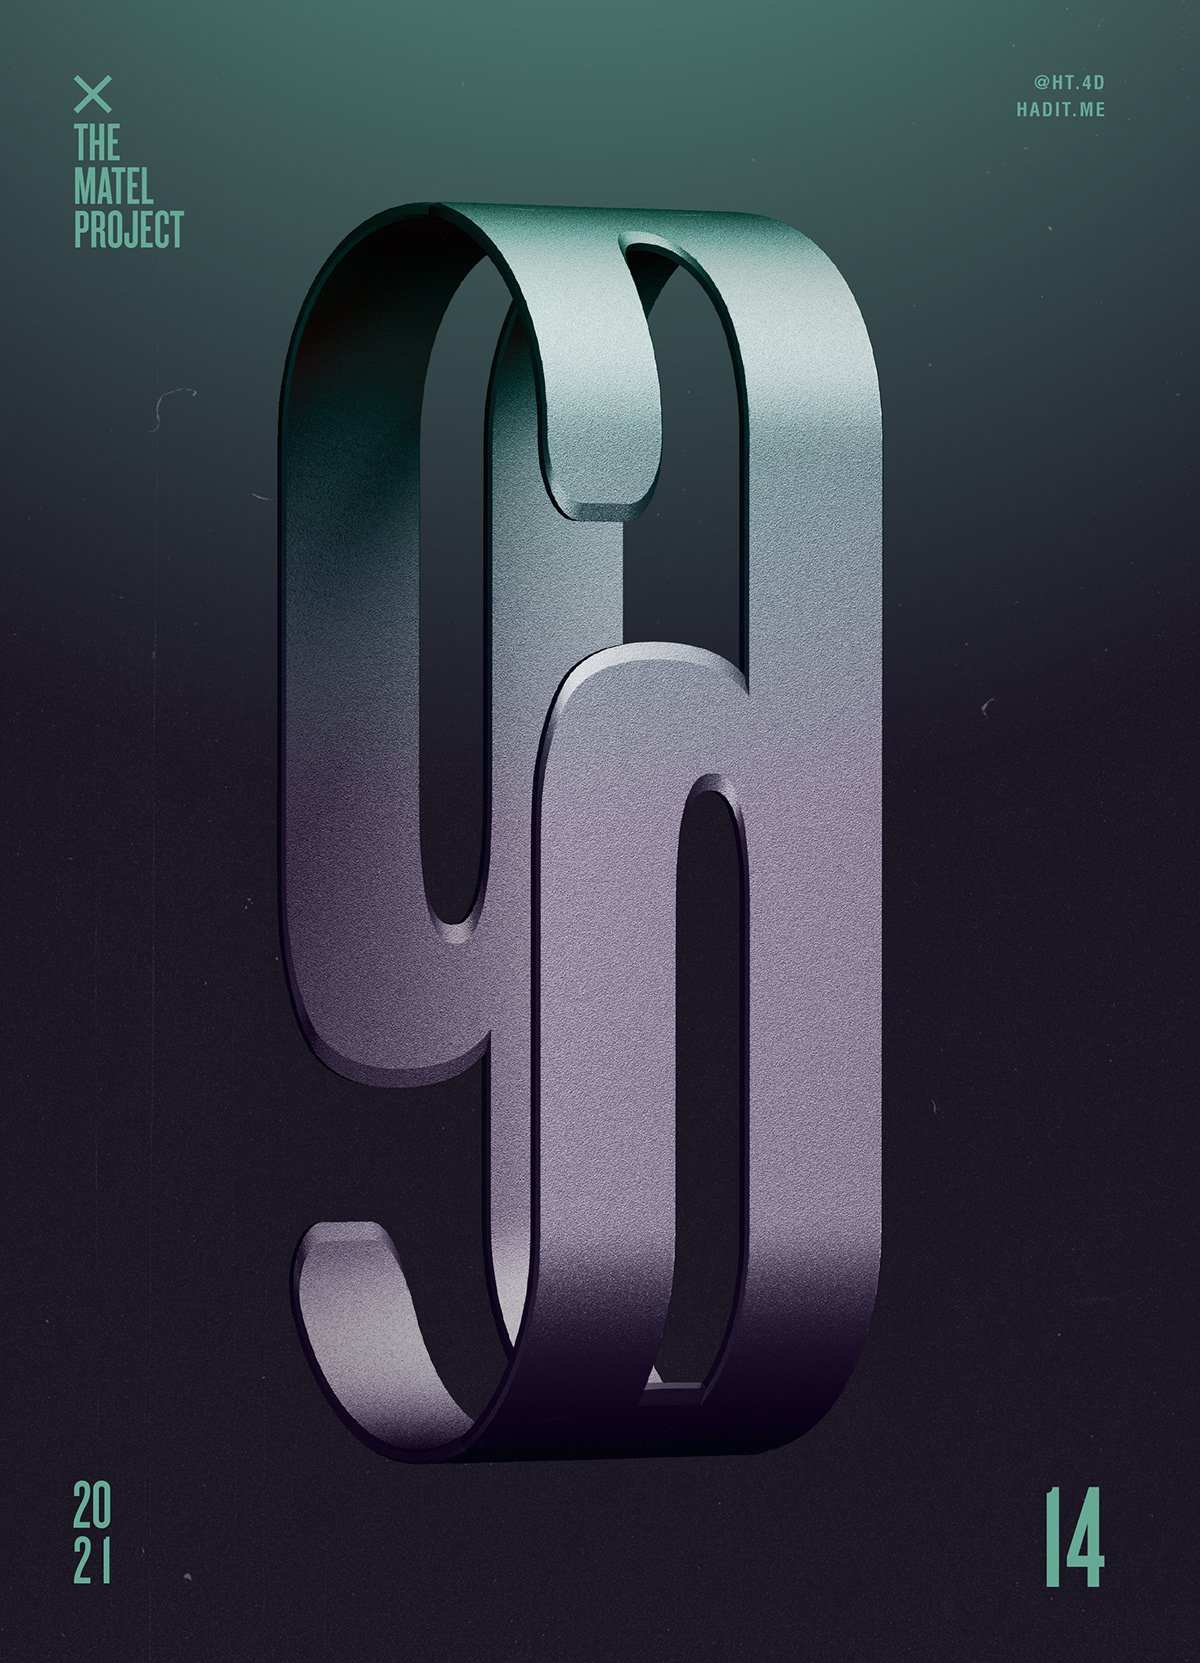 c4d posters typo 3DType typography   3D 3dart 3dposters type